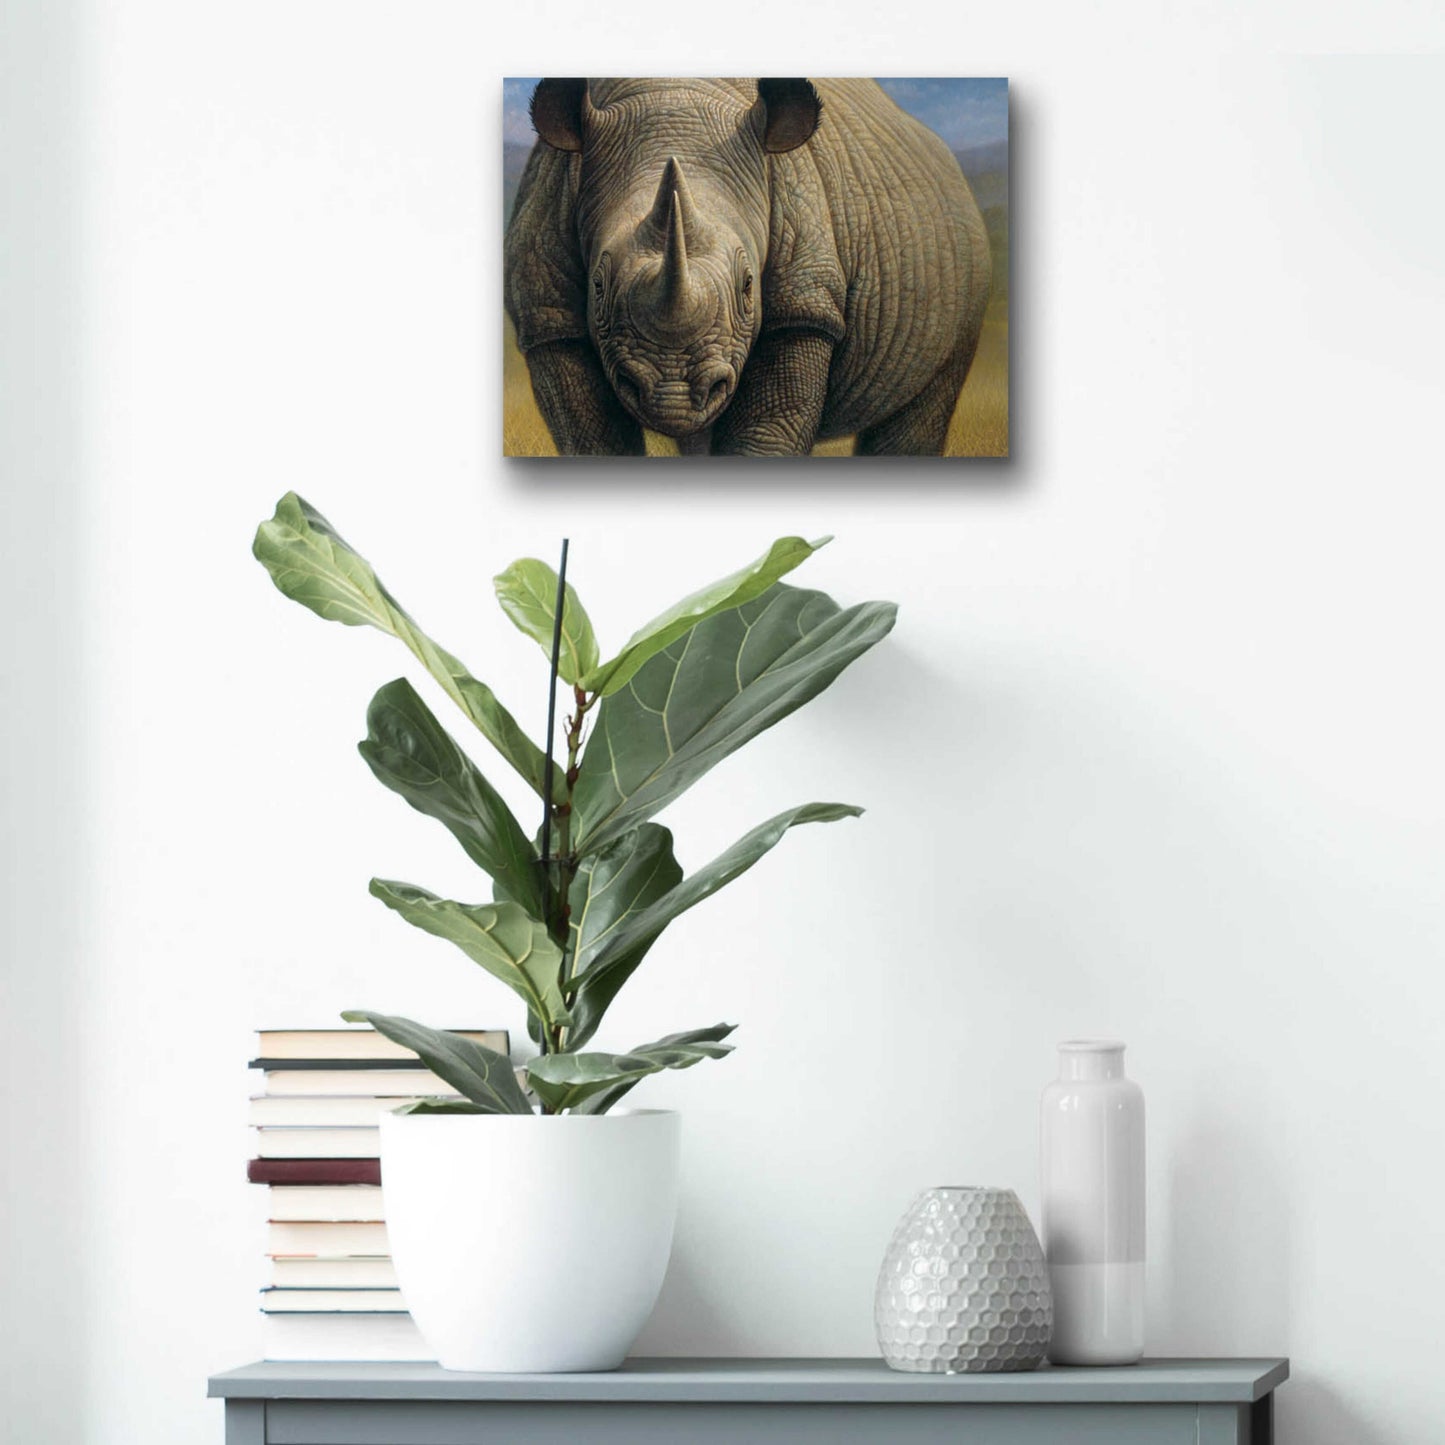 Epic Art 'Rhinos' by Dan Craig, Acrylic Glass Wall Art,16x12